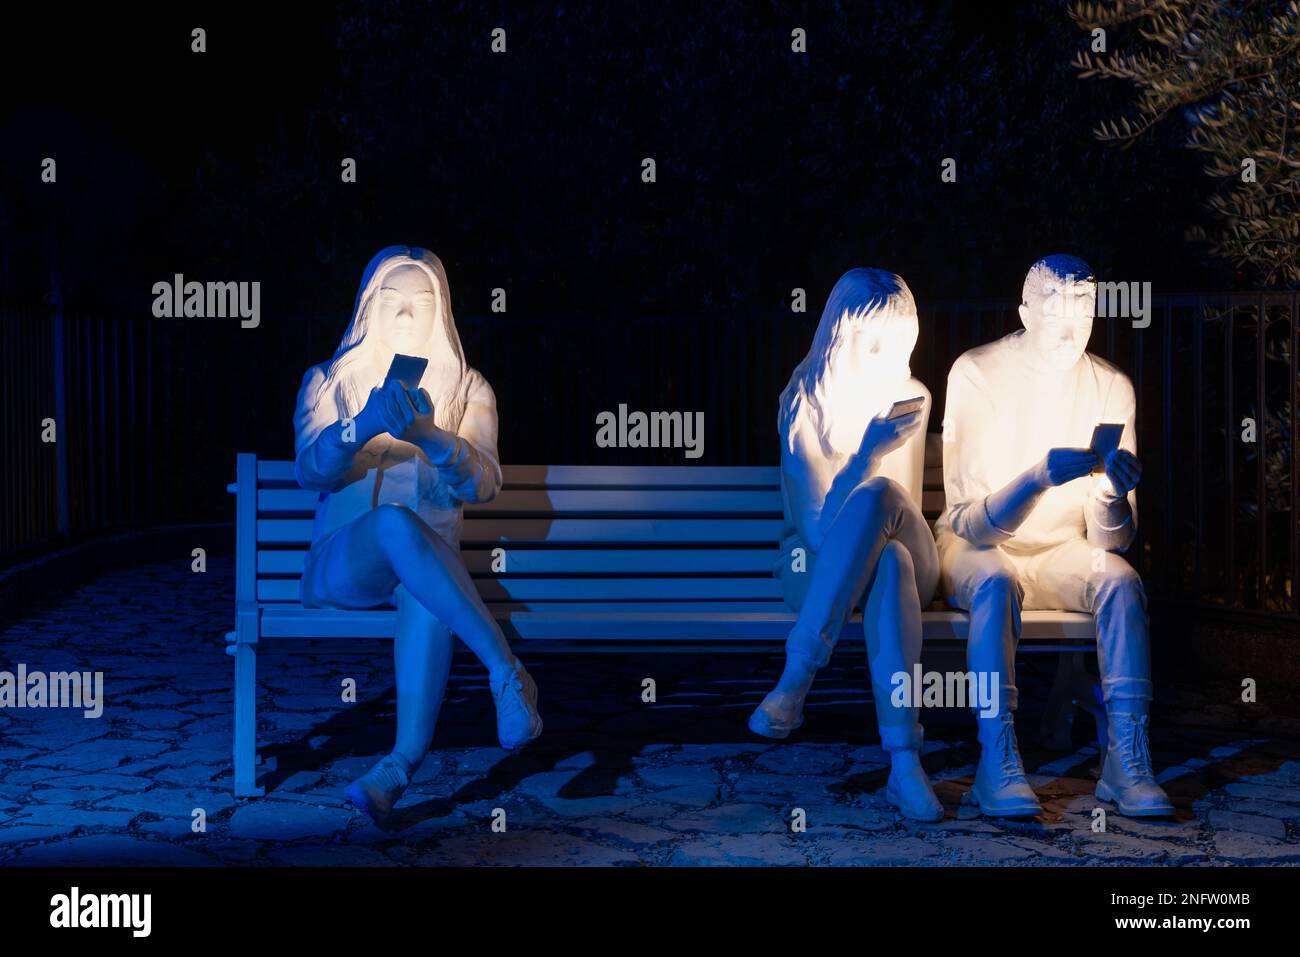 Brescia - Italie. 15 février 2023: La lumière est la vie, (Festa delle Luci A2A), des figures humaines illuminées tenant des téléphones mobiles et assis sur un banc Banque D'Images